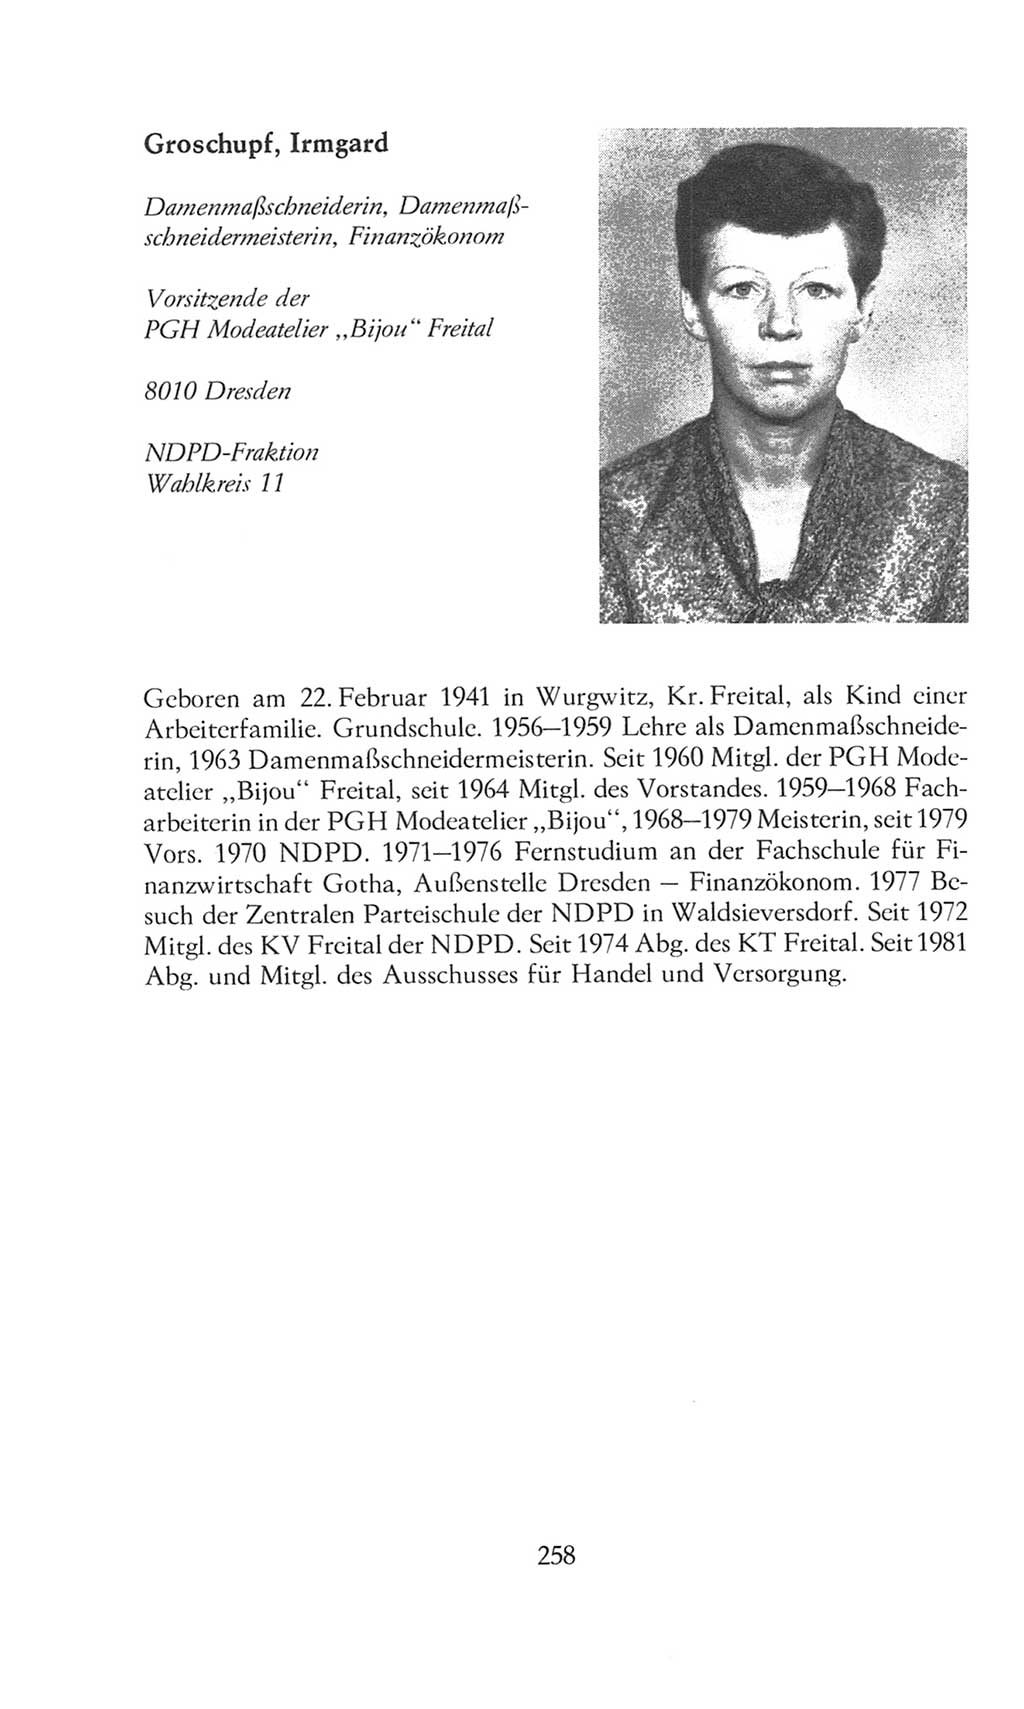 Volkskammer (VK) der Deutschen Demokratischen Republik (DDR), 8. Wahlperiode 1981-1986, Seite 258 (VK. DDR 8. WP. 1981-1986, S. 258)